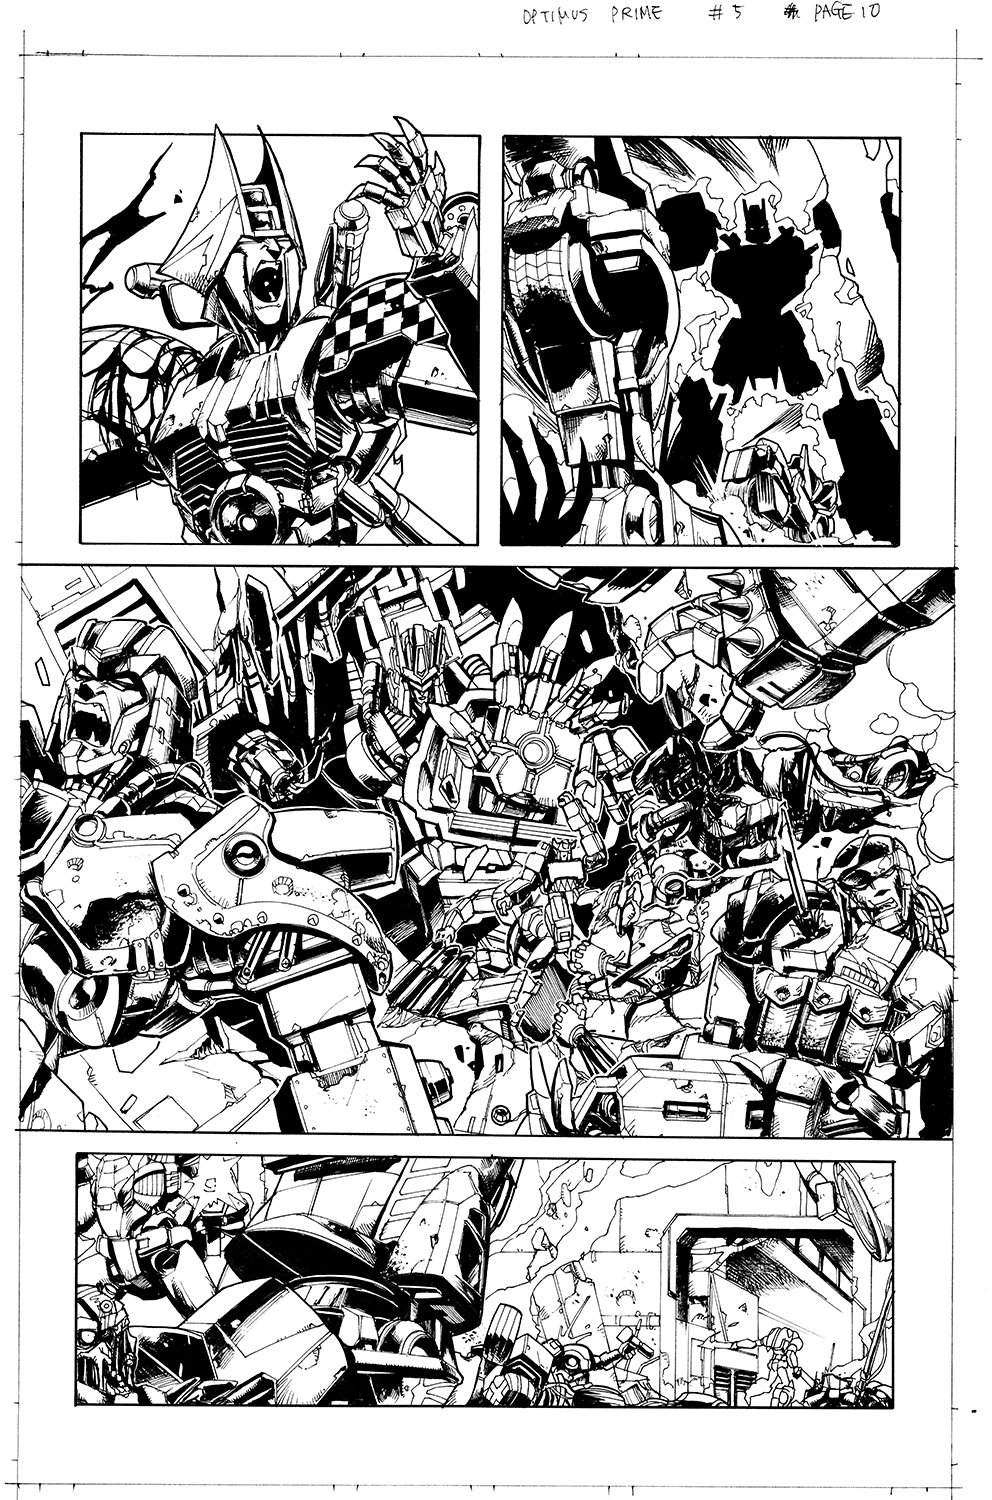 Optimus Prime #5 Page 10